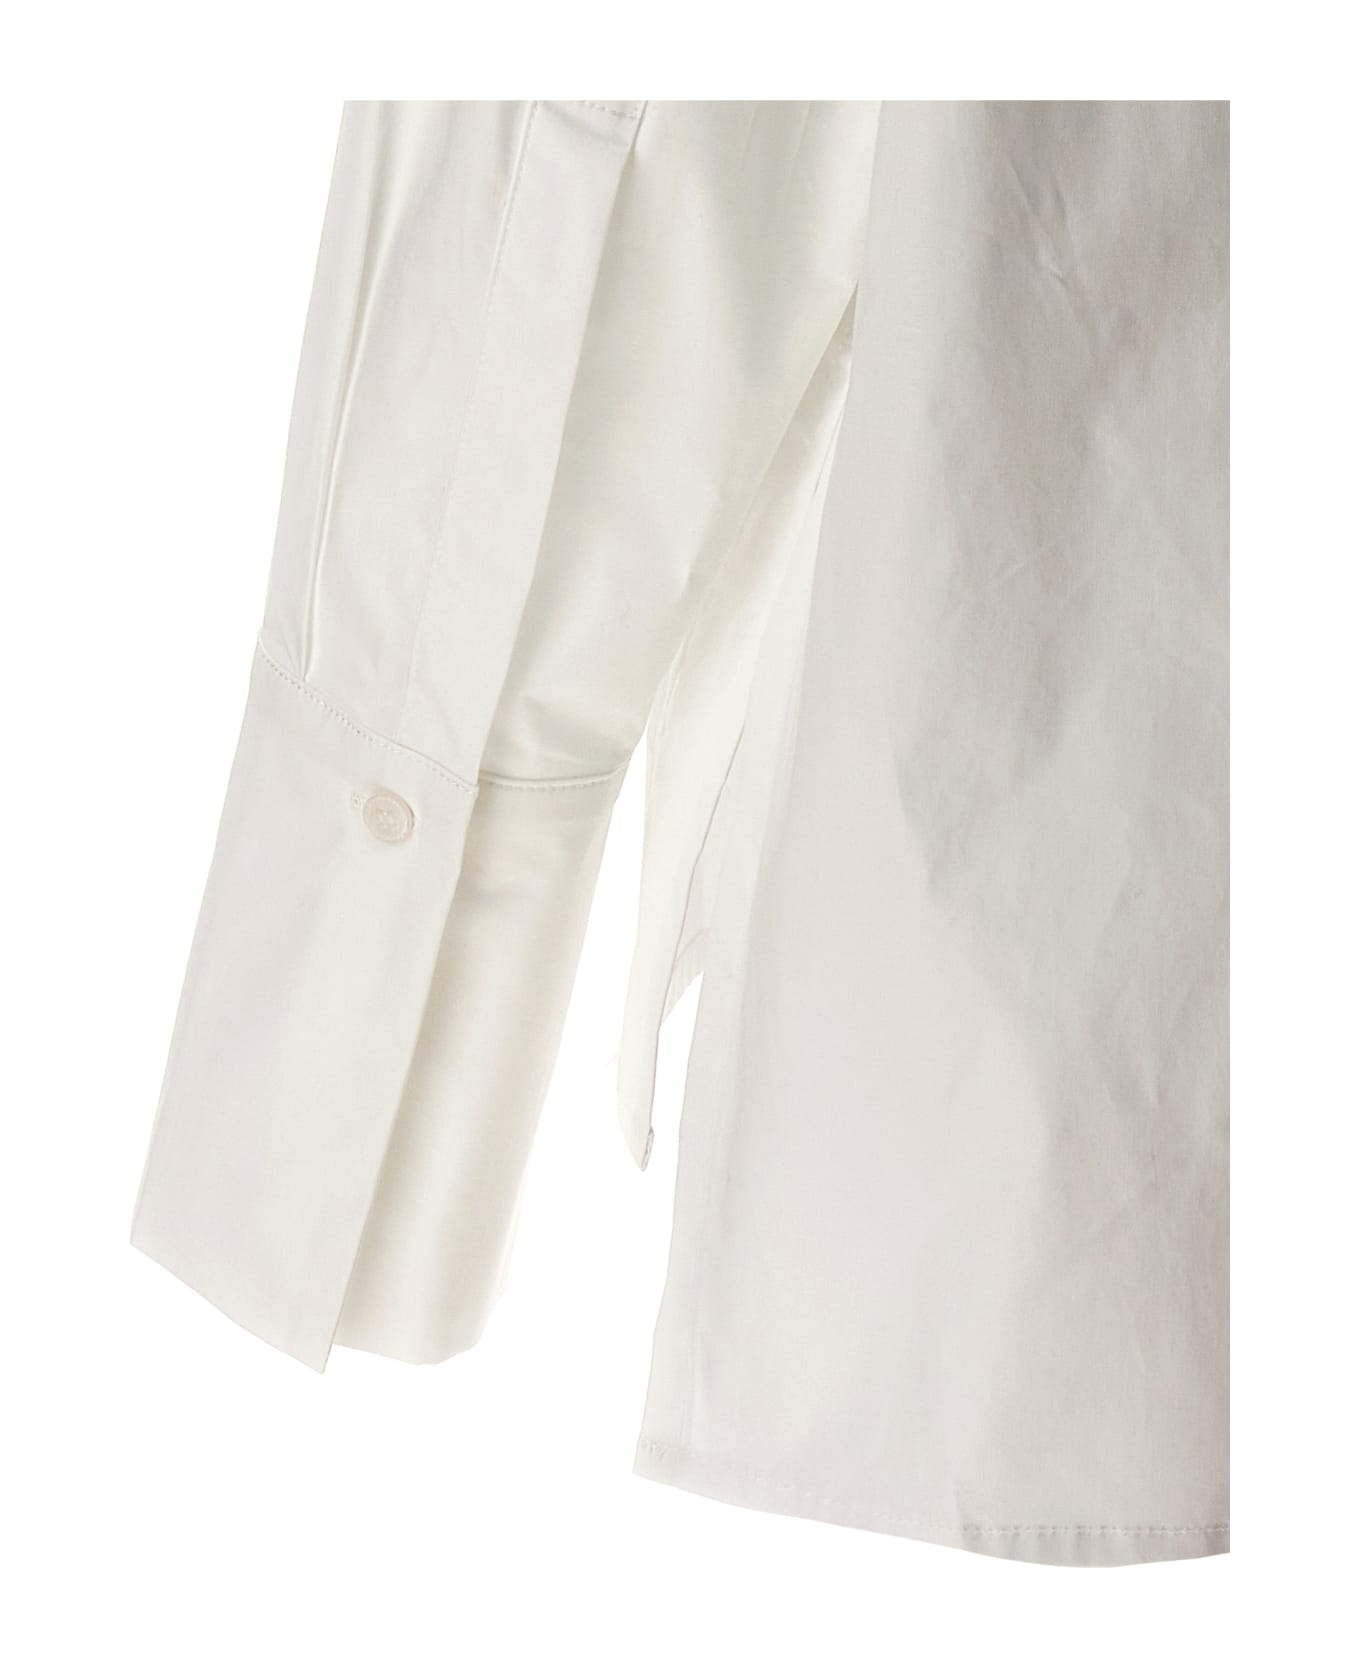 Balossa 'mirta' Shirt - White シャツ